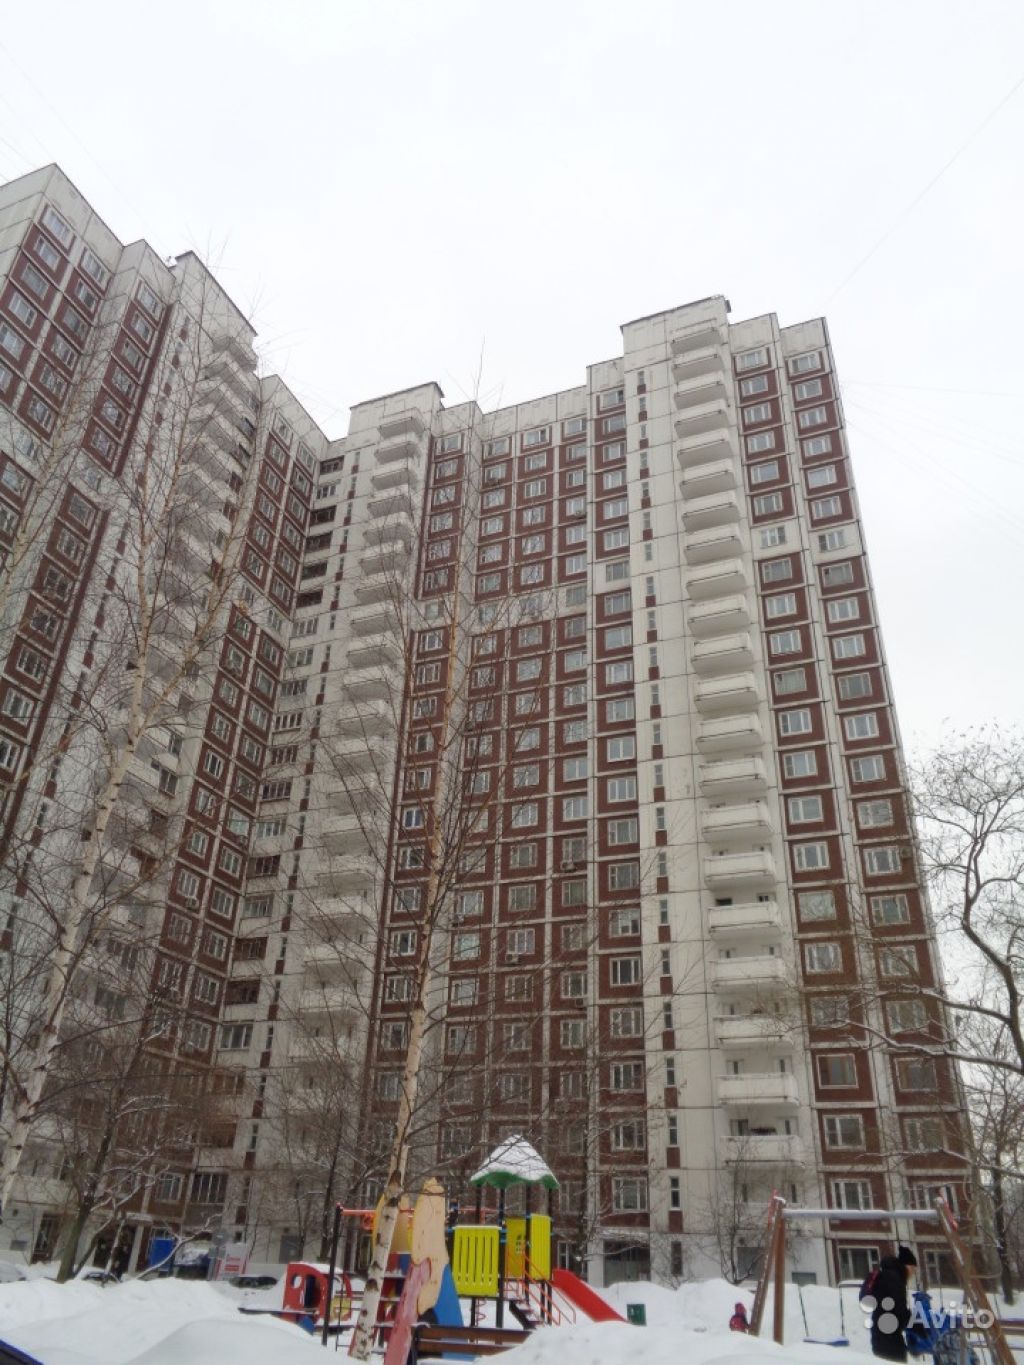 Продам квартиру 2-к квартира 61 м² на 14 этаже 22-этажного панельного дома в Москве. Фото 1